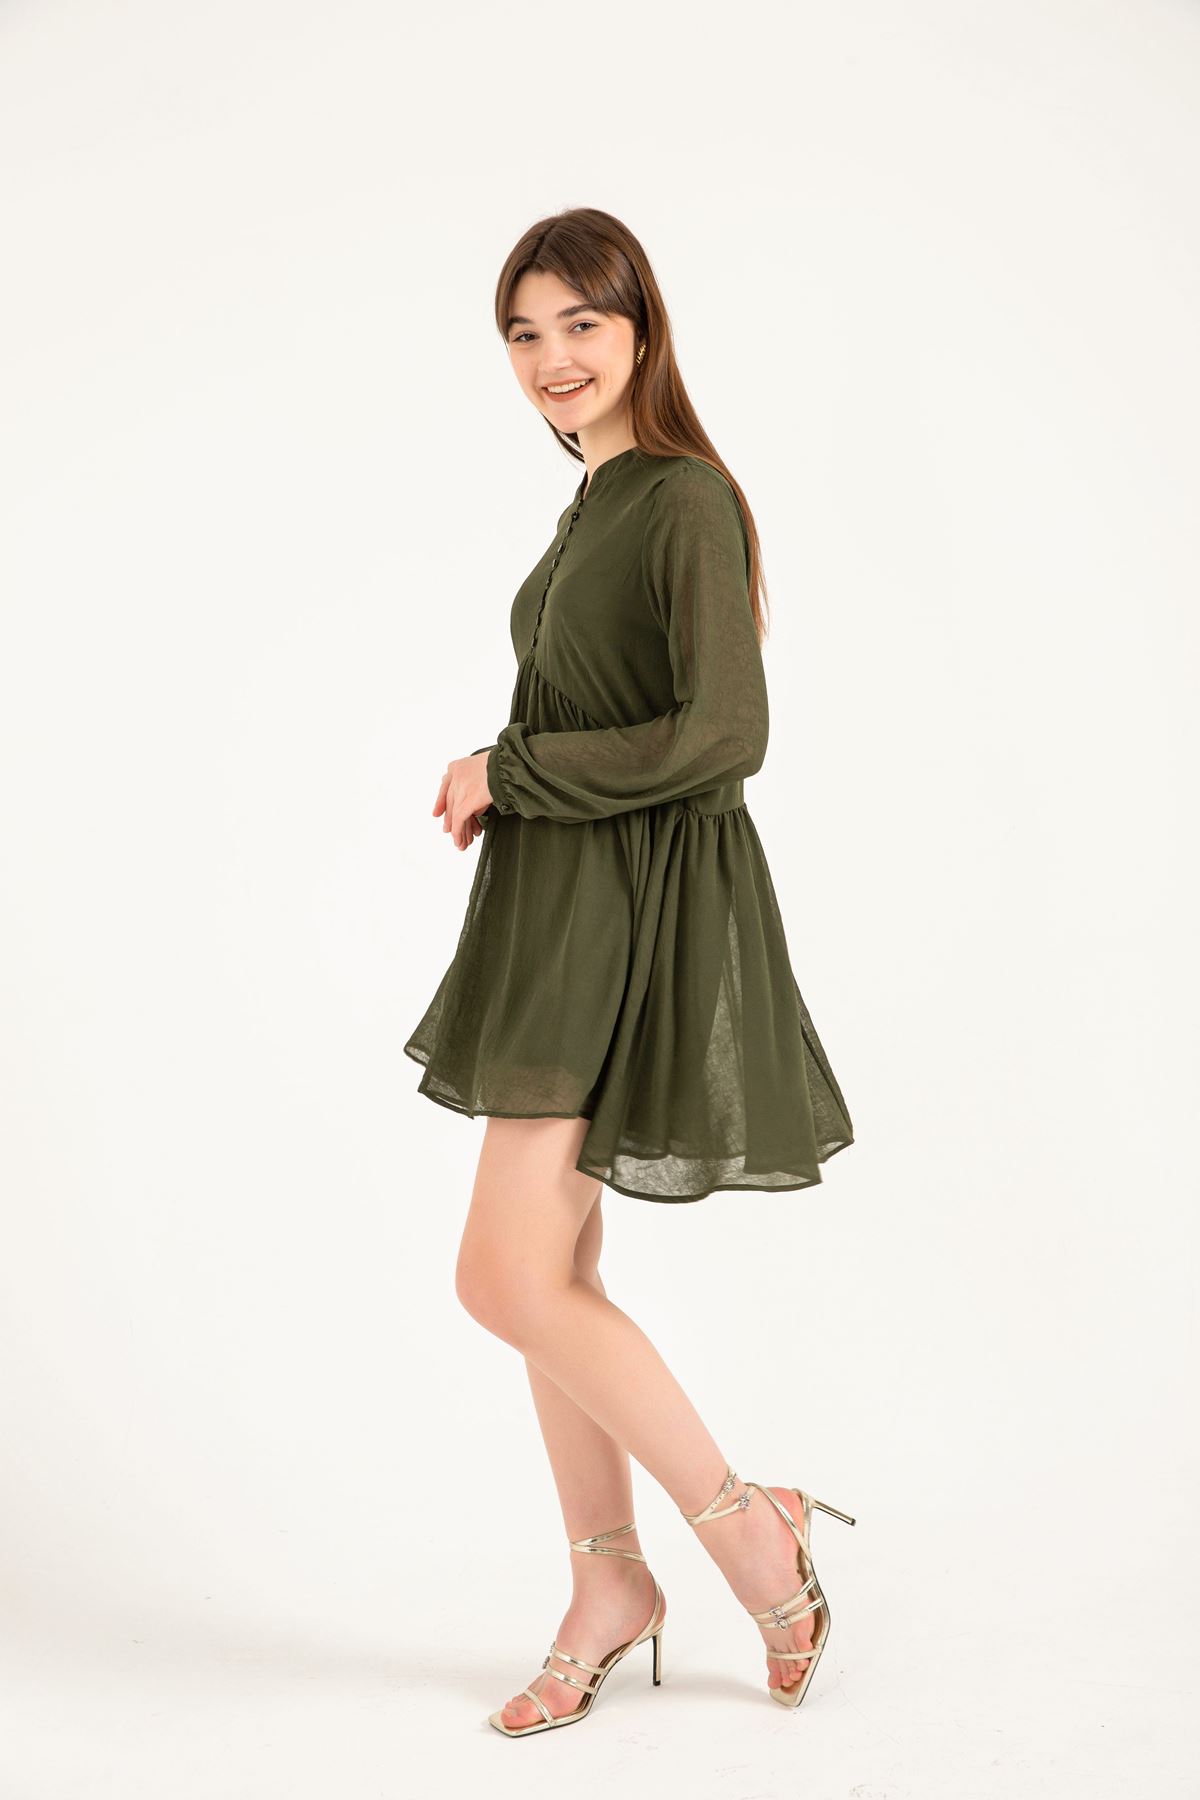 فستان نسائي قماش شيفون ياقة قصير قالب مريح - اخضر غامق